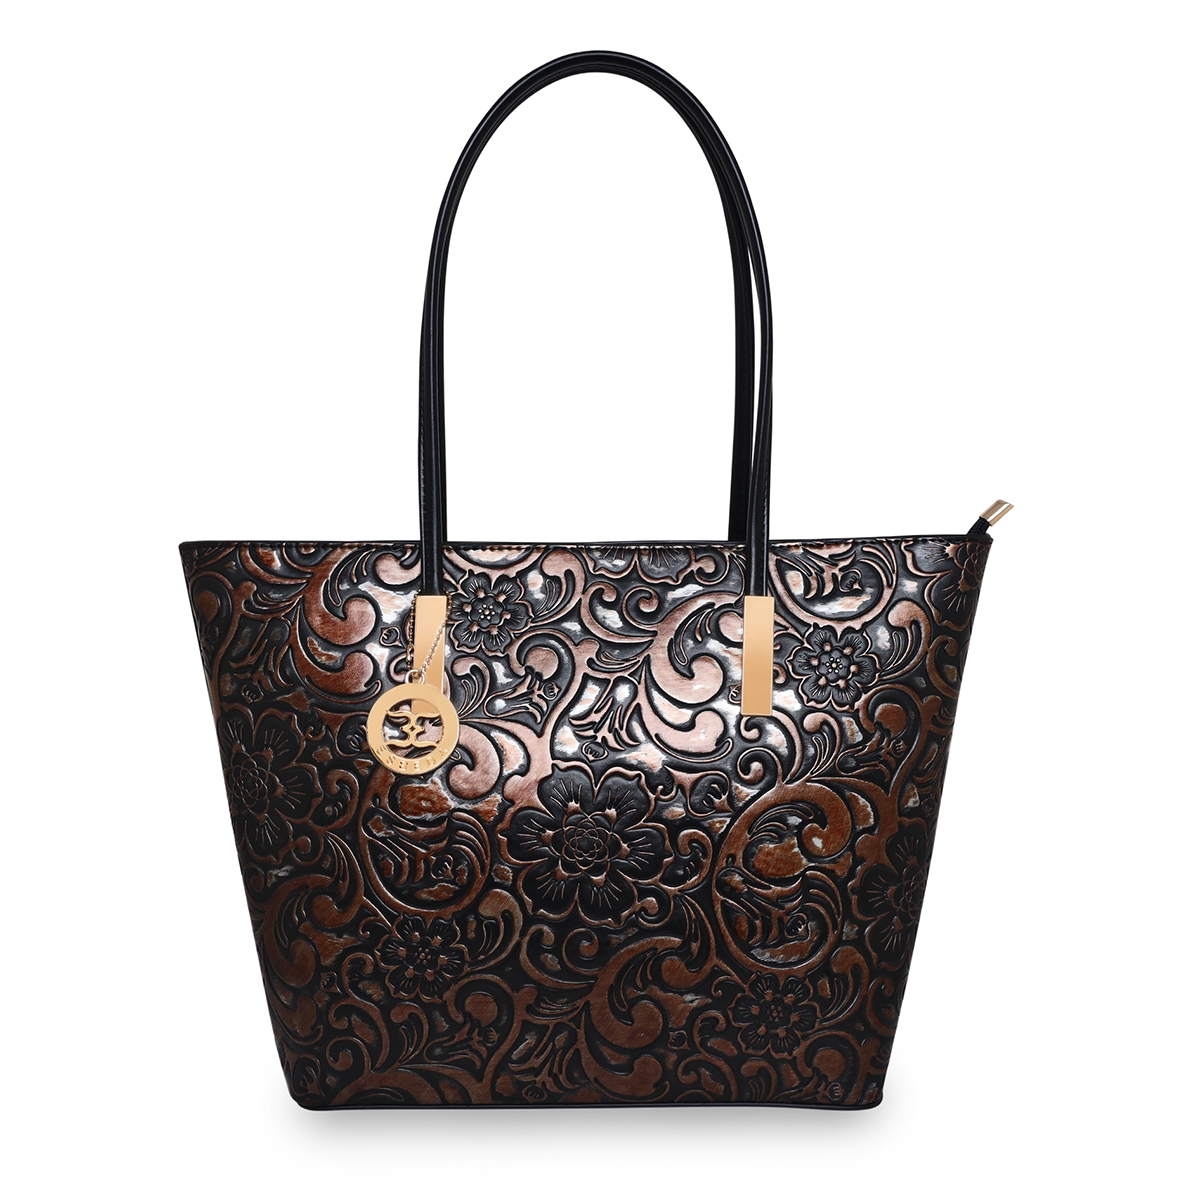 ESBEDA | Women's Brown PU Printed Handbags 0